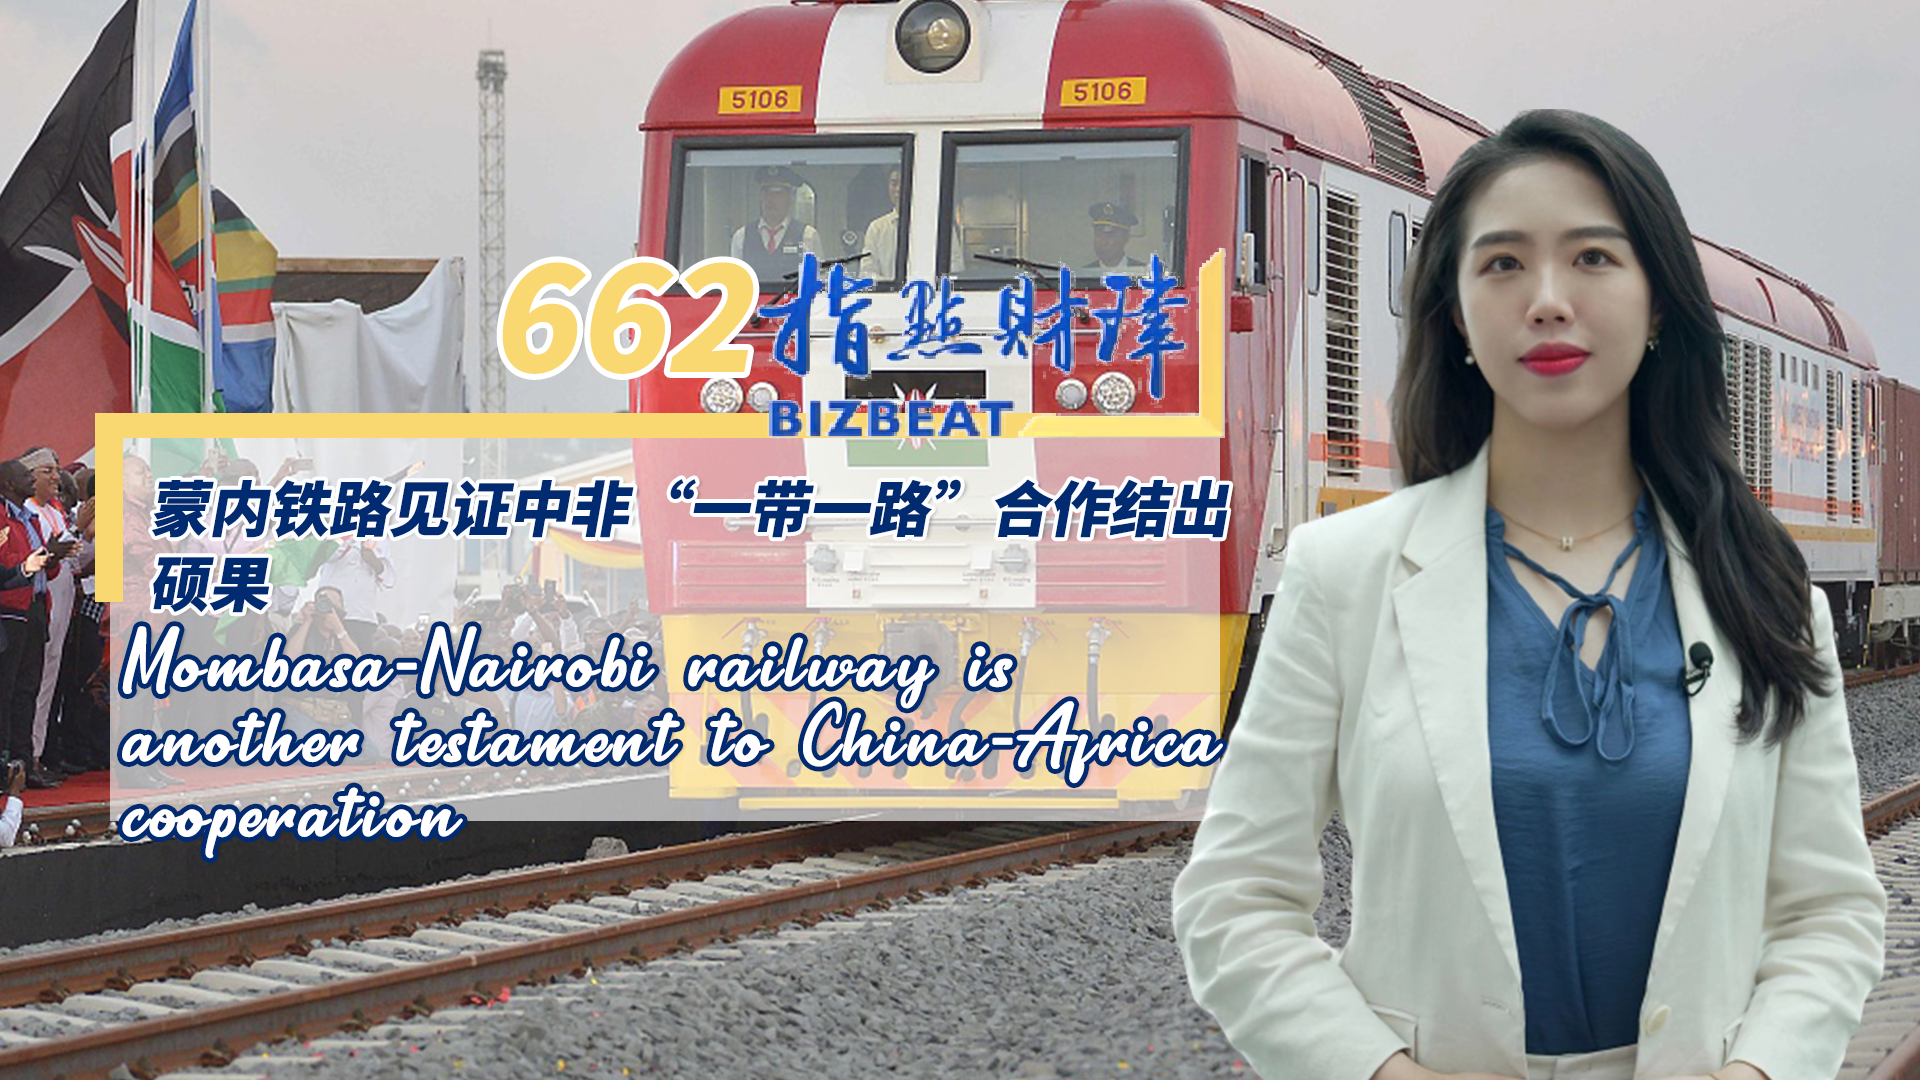 Mombasa-Nairobi railway is testament to China-Africa cooperation